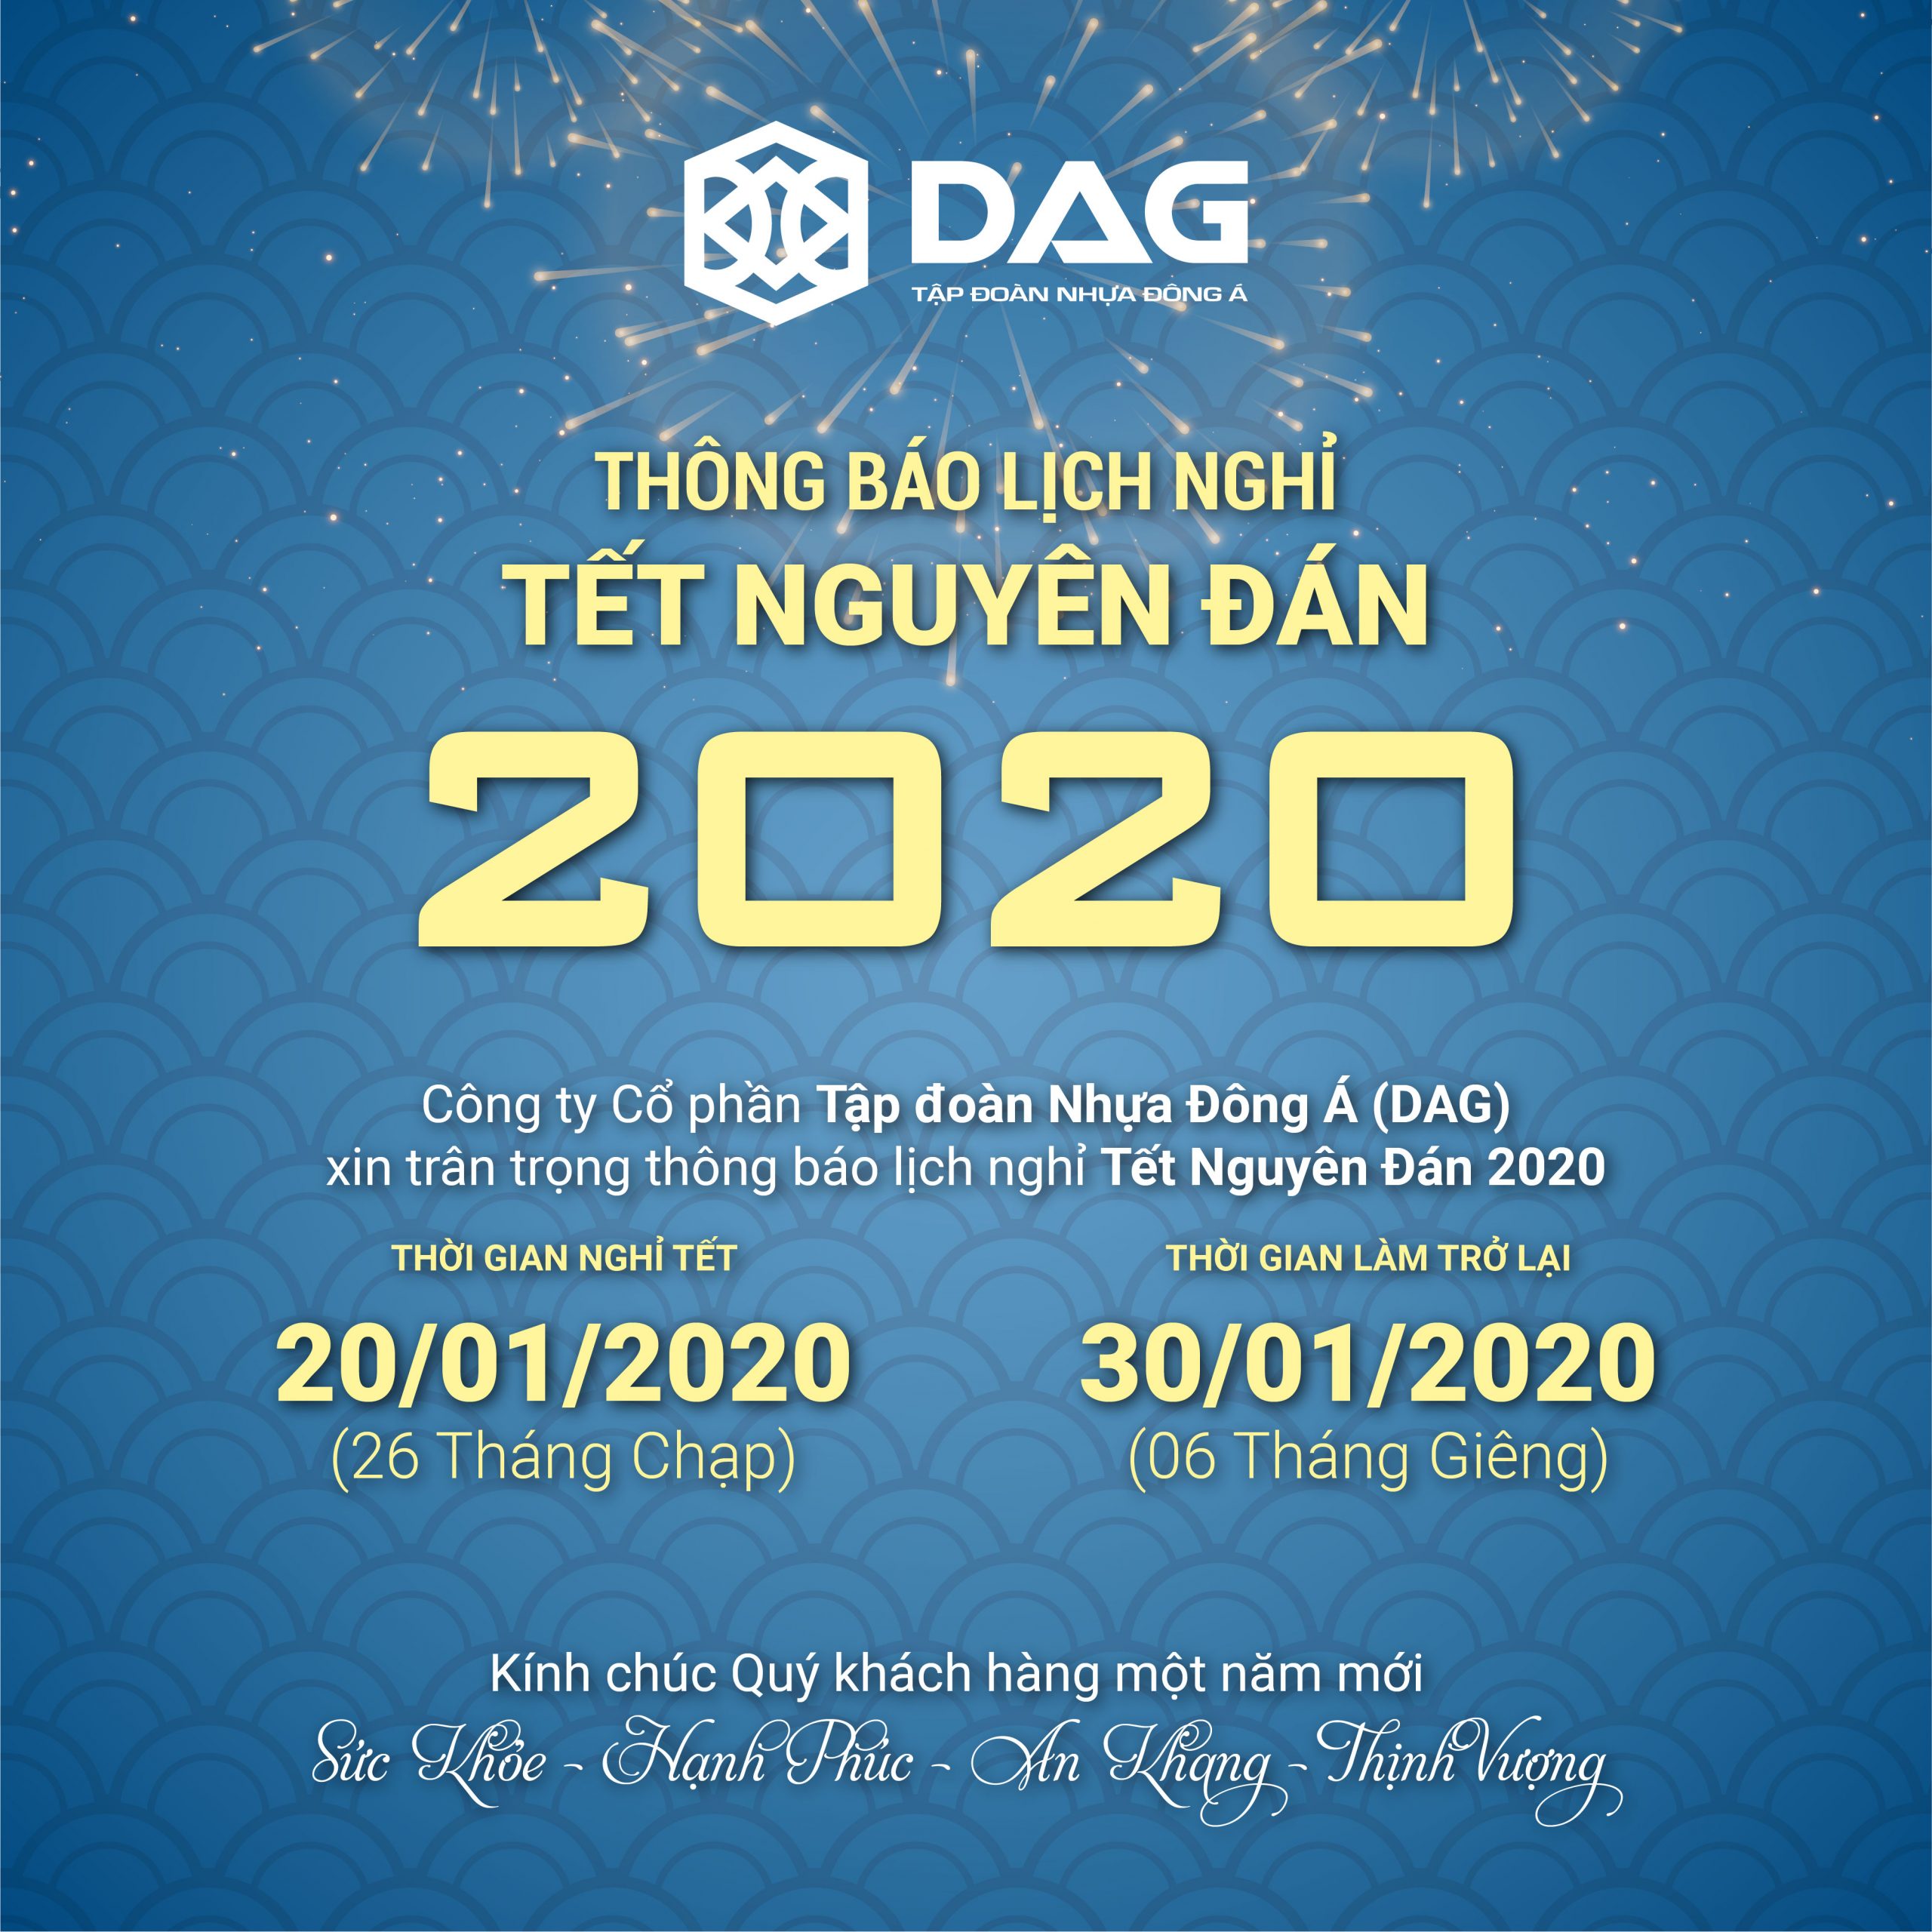 DAG thông báo Lịch Nghỉ Tết Nguyên Đán 2020